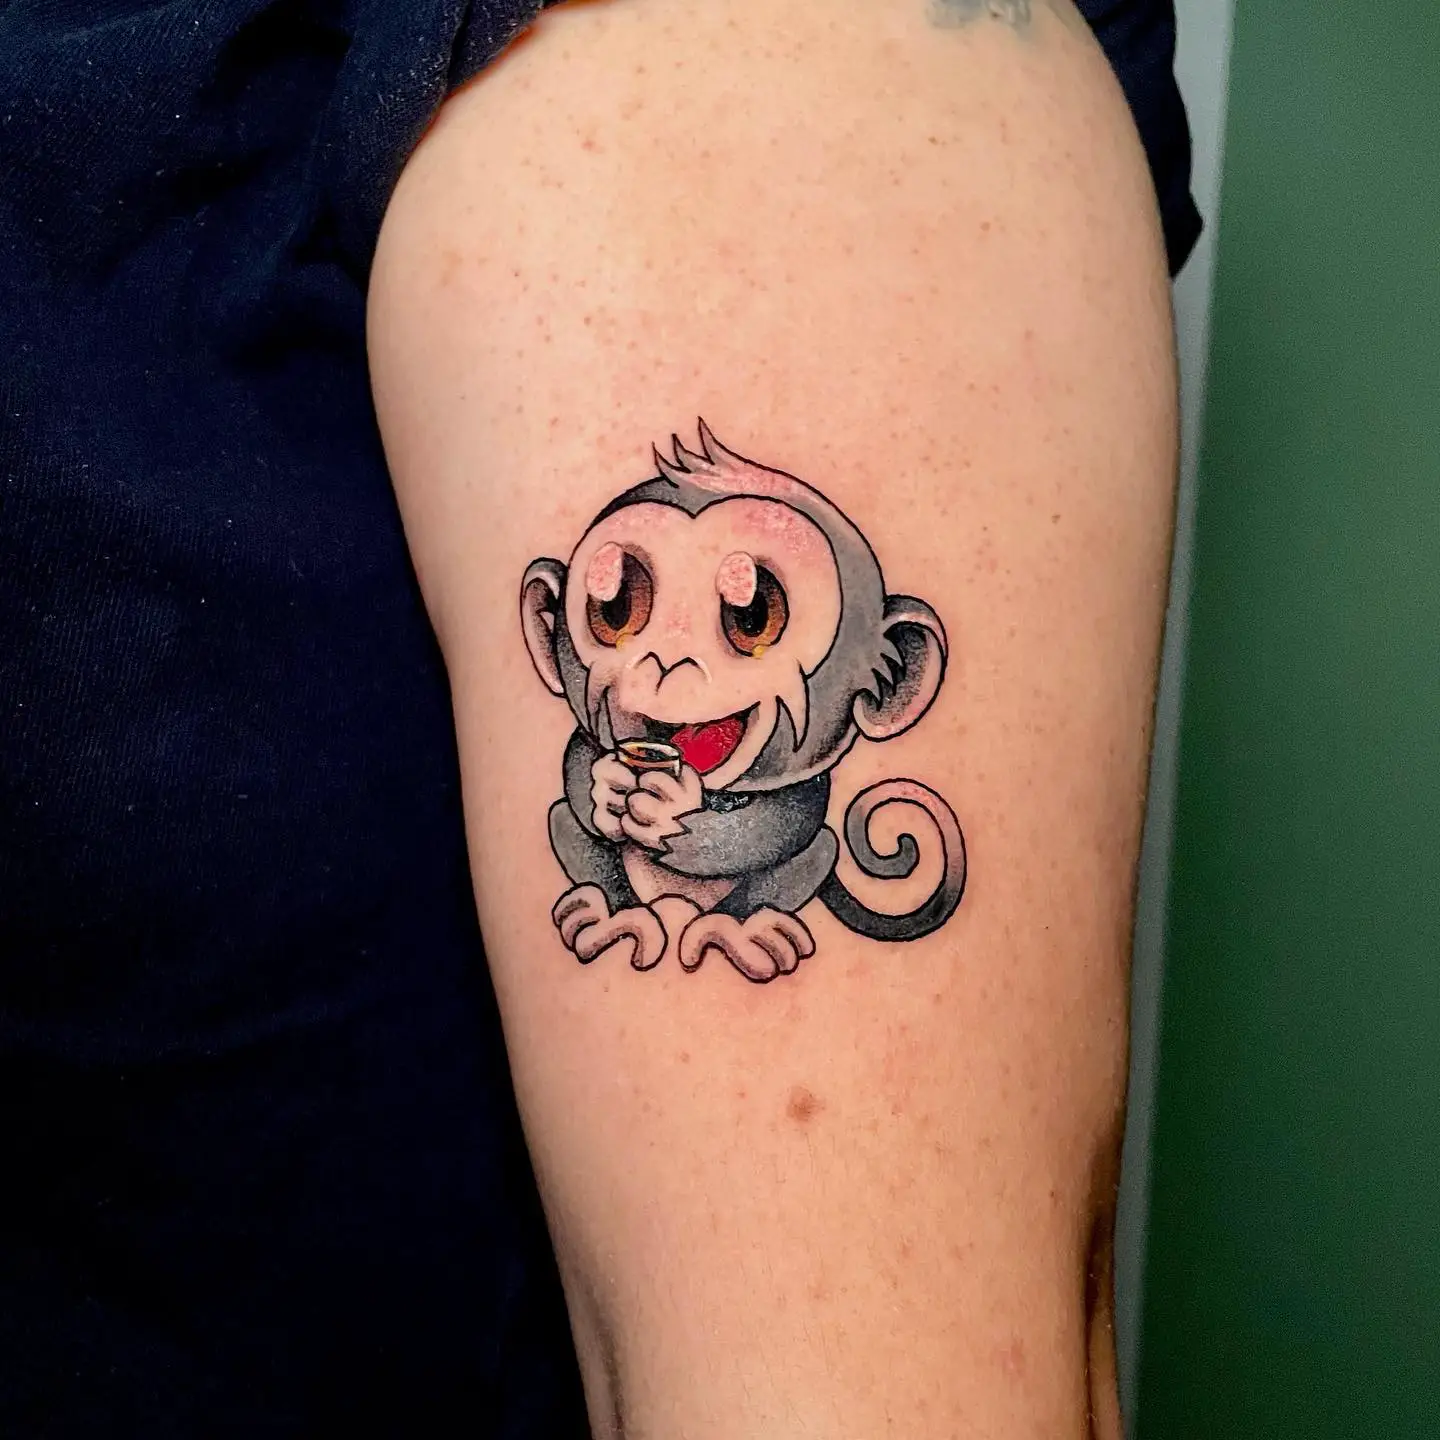 Cute monkey tattoo design by loscarlostattoos